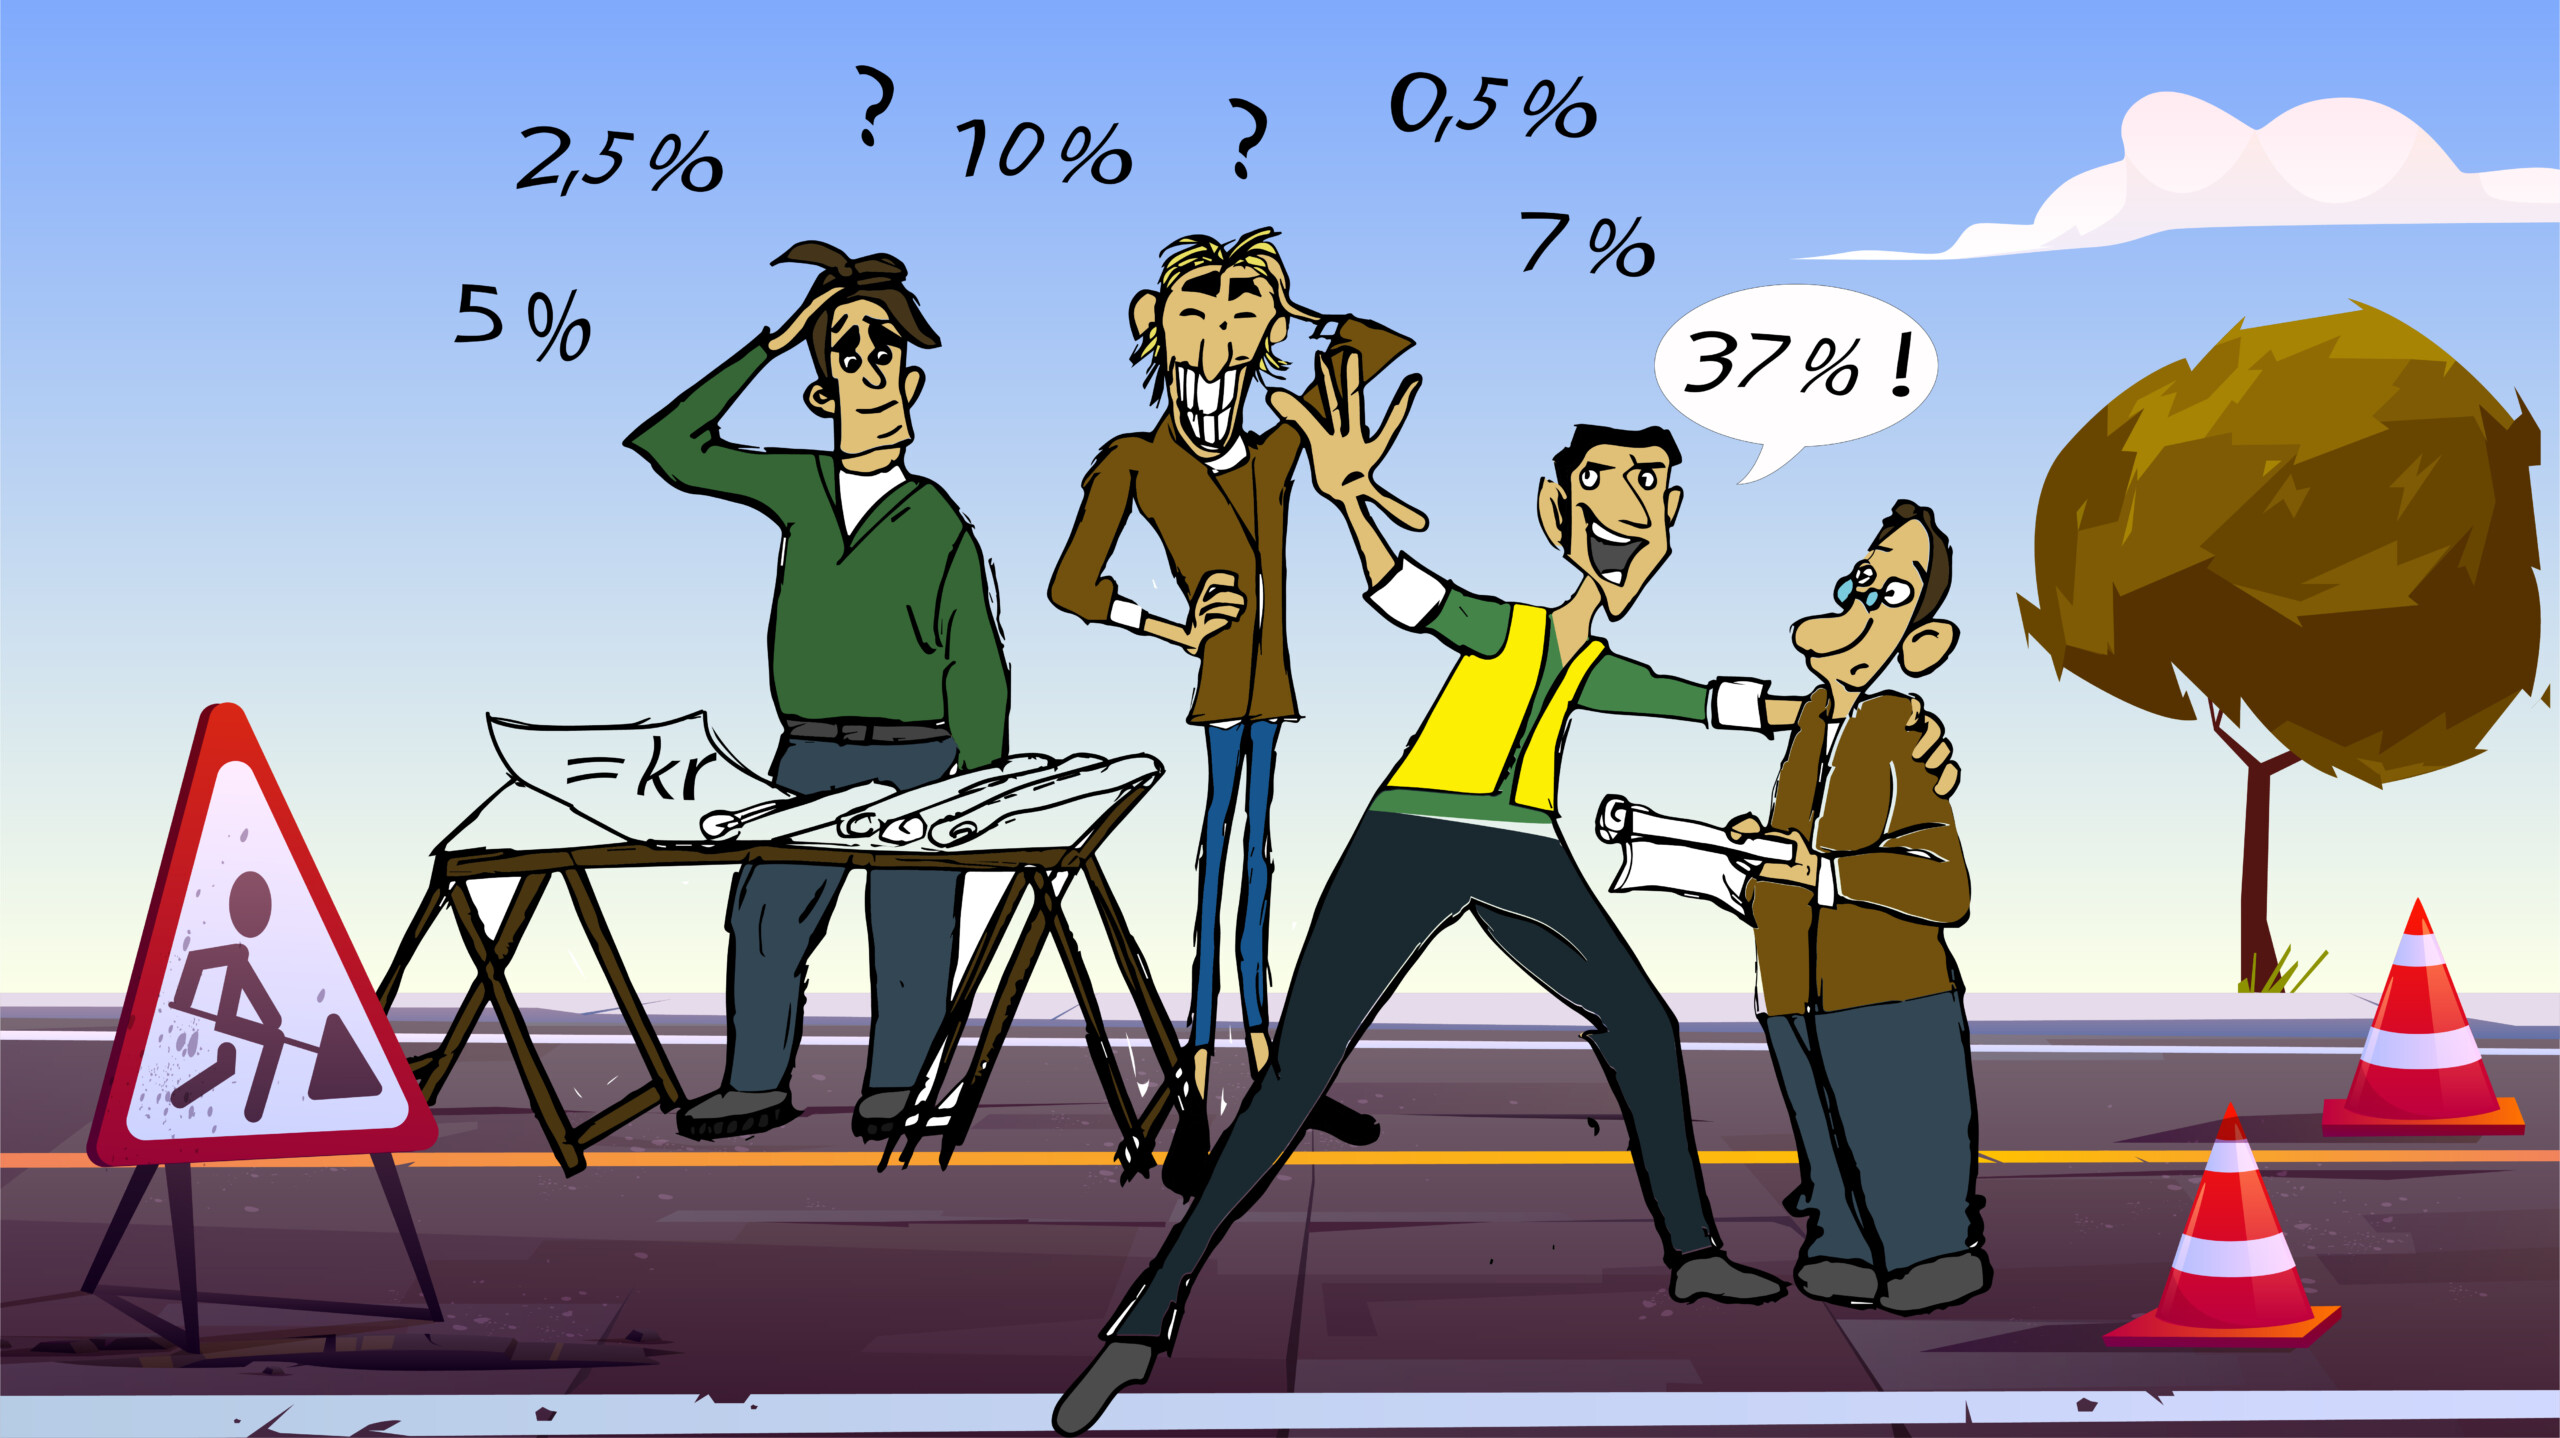 karrikaturtegning av 4 menn som står på en vei og diskuterer tall og prosenter.